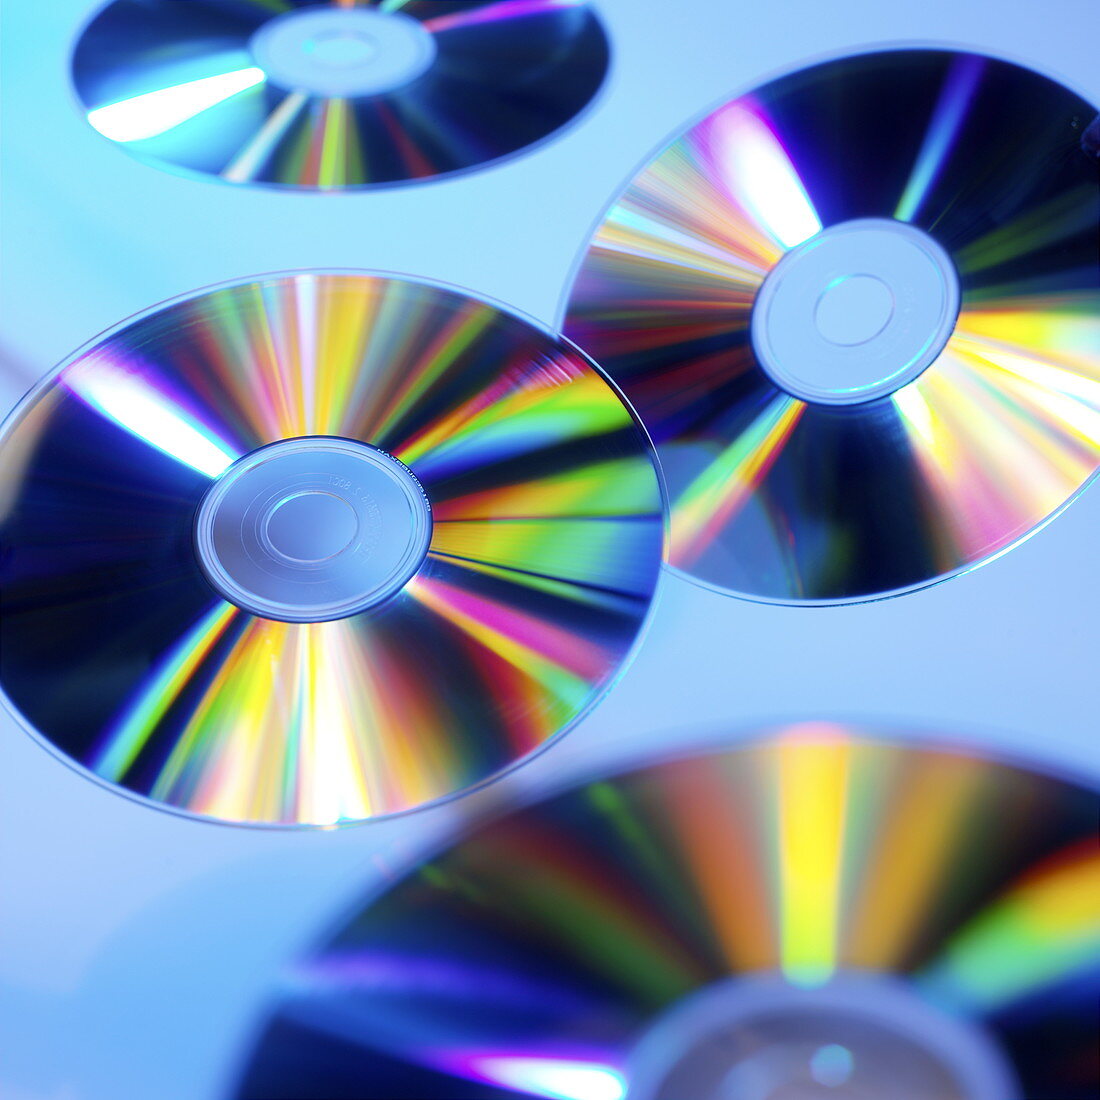 Compact discs